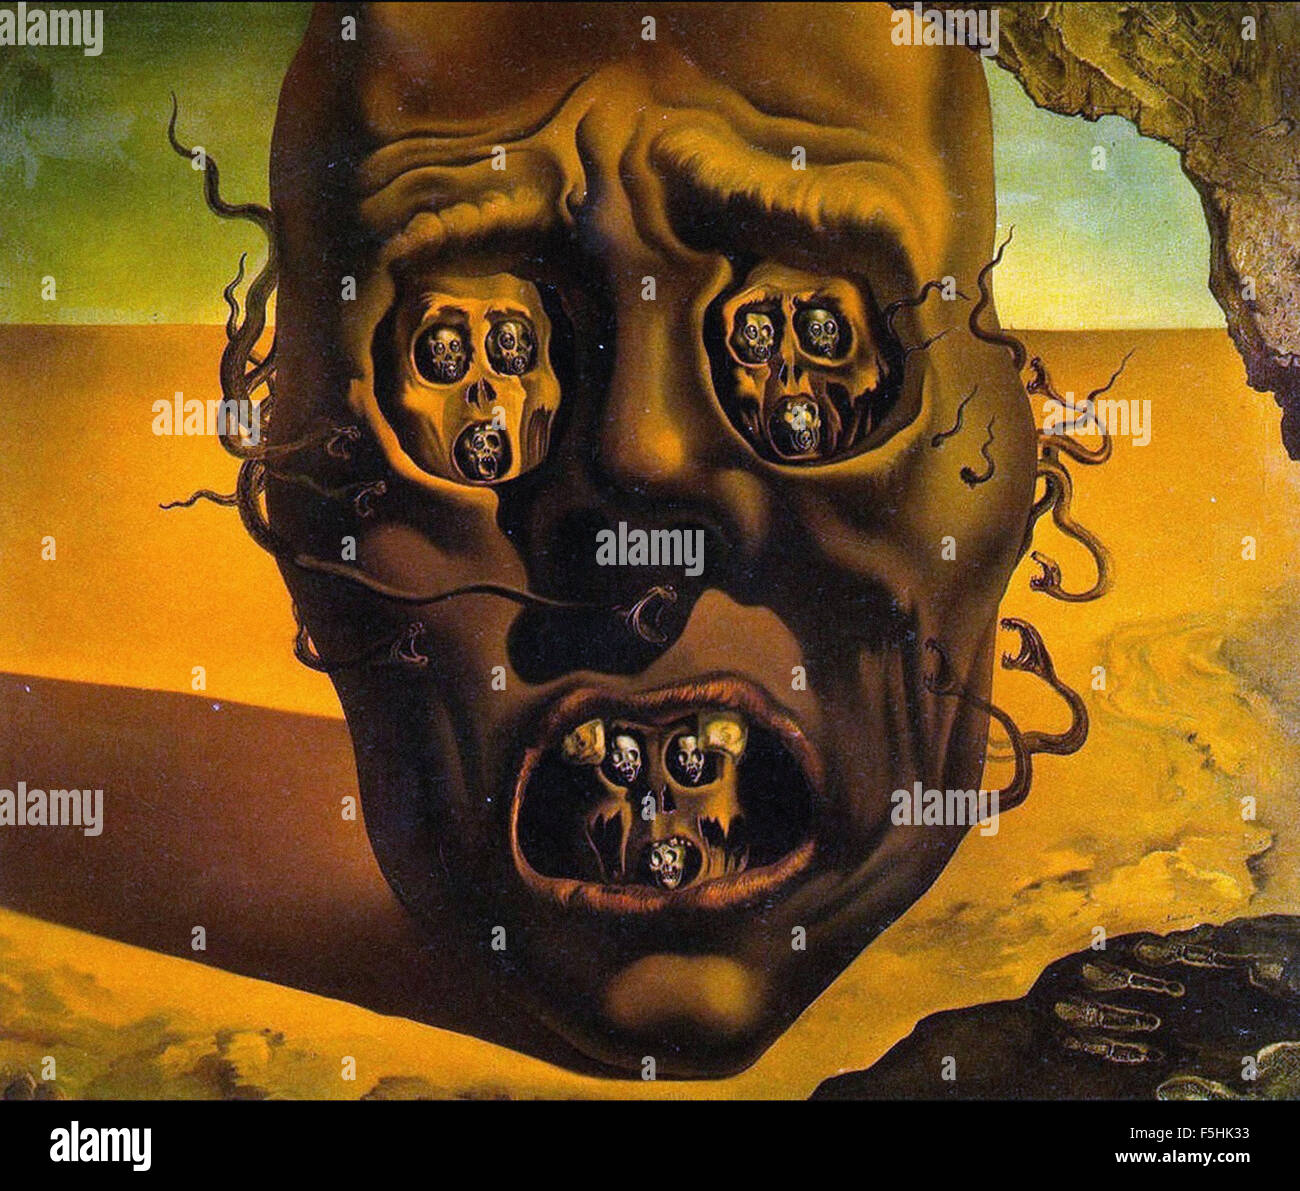 Salvador Dalí - El rostro de la guerra Foto de stock